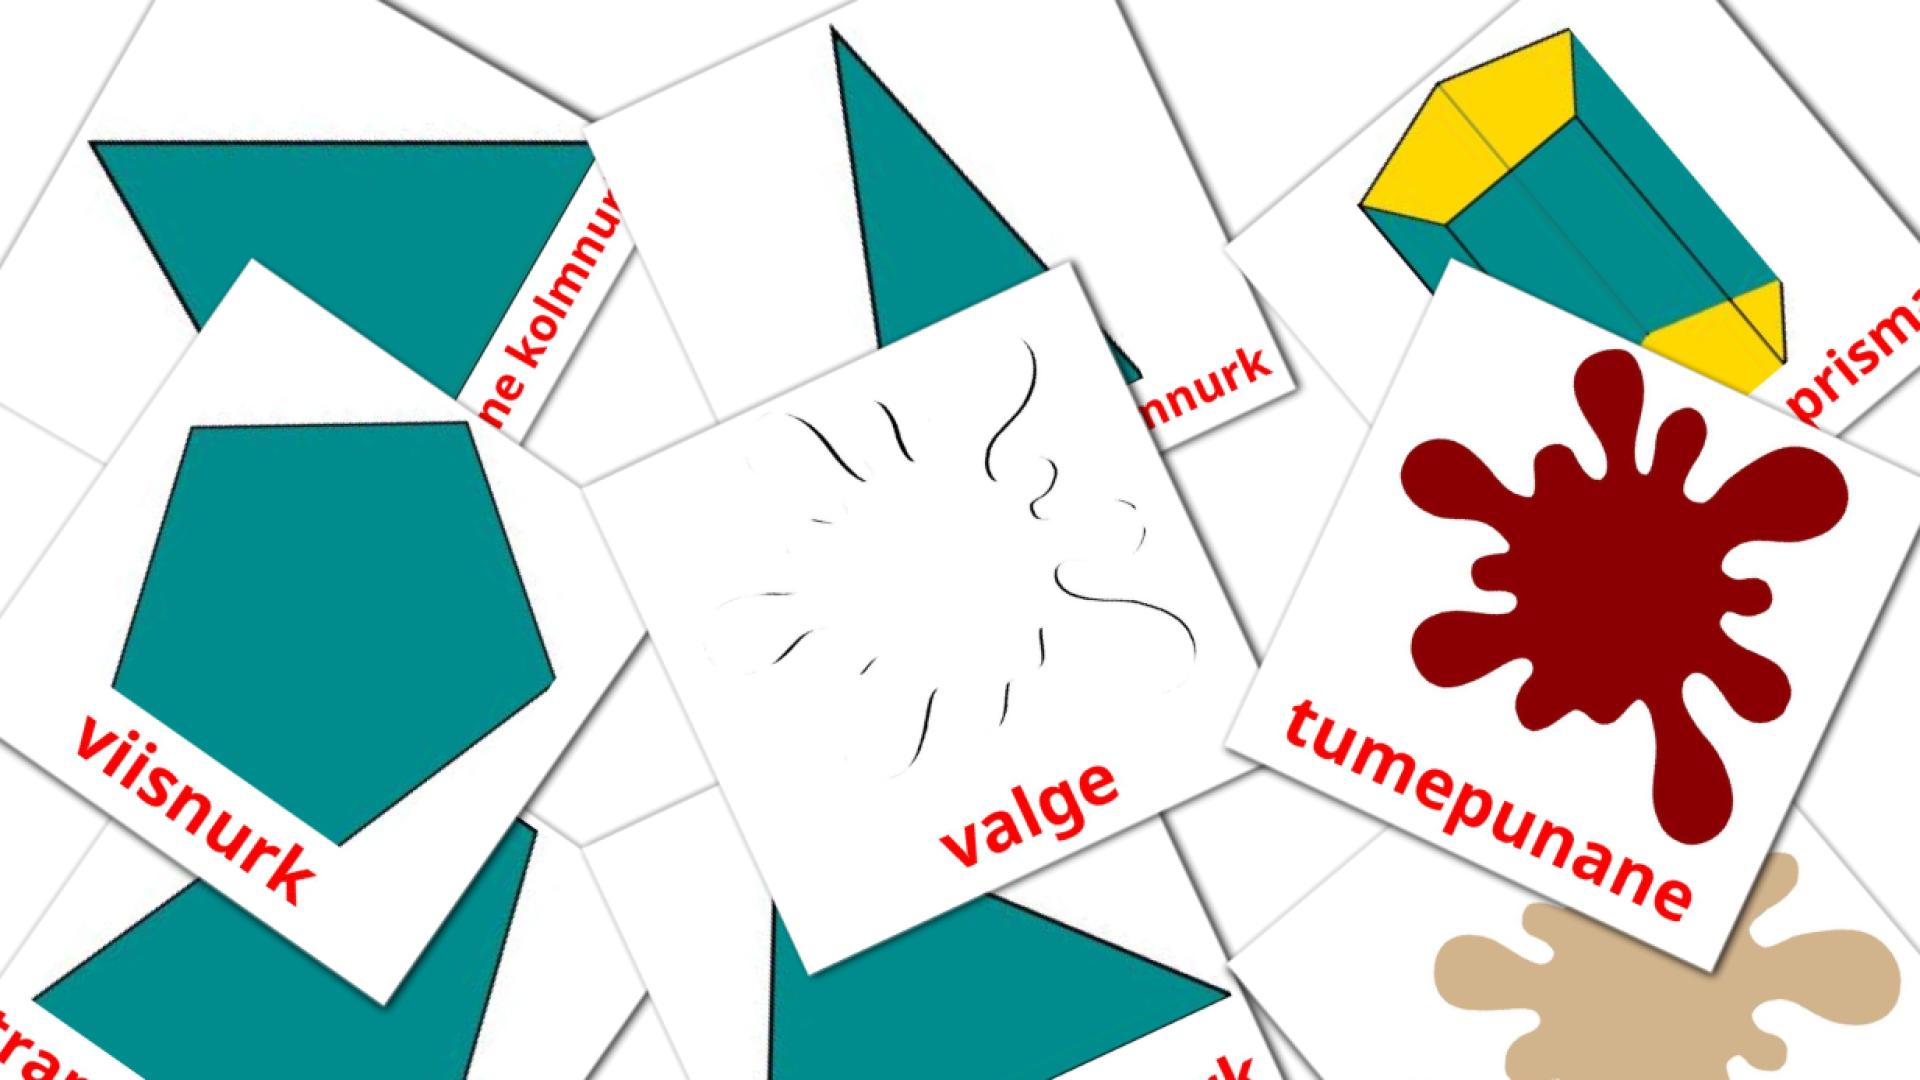 värvid estonian vocabulary flashcards